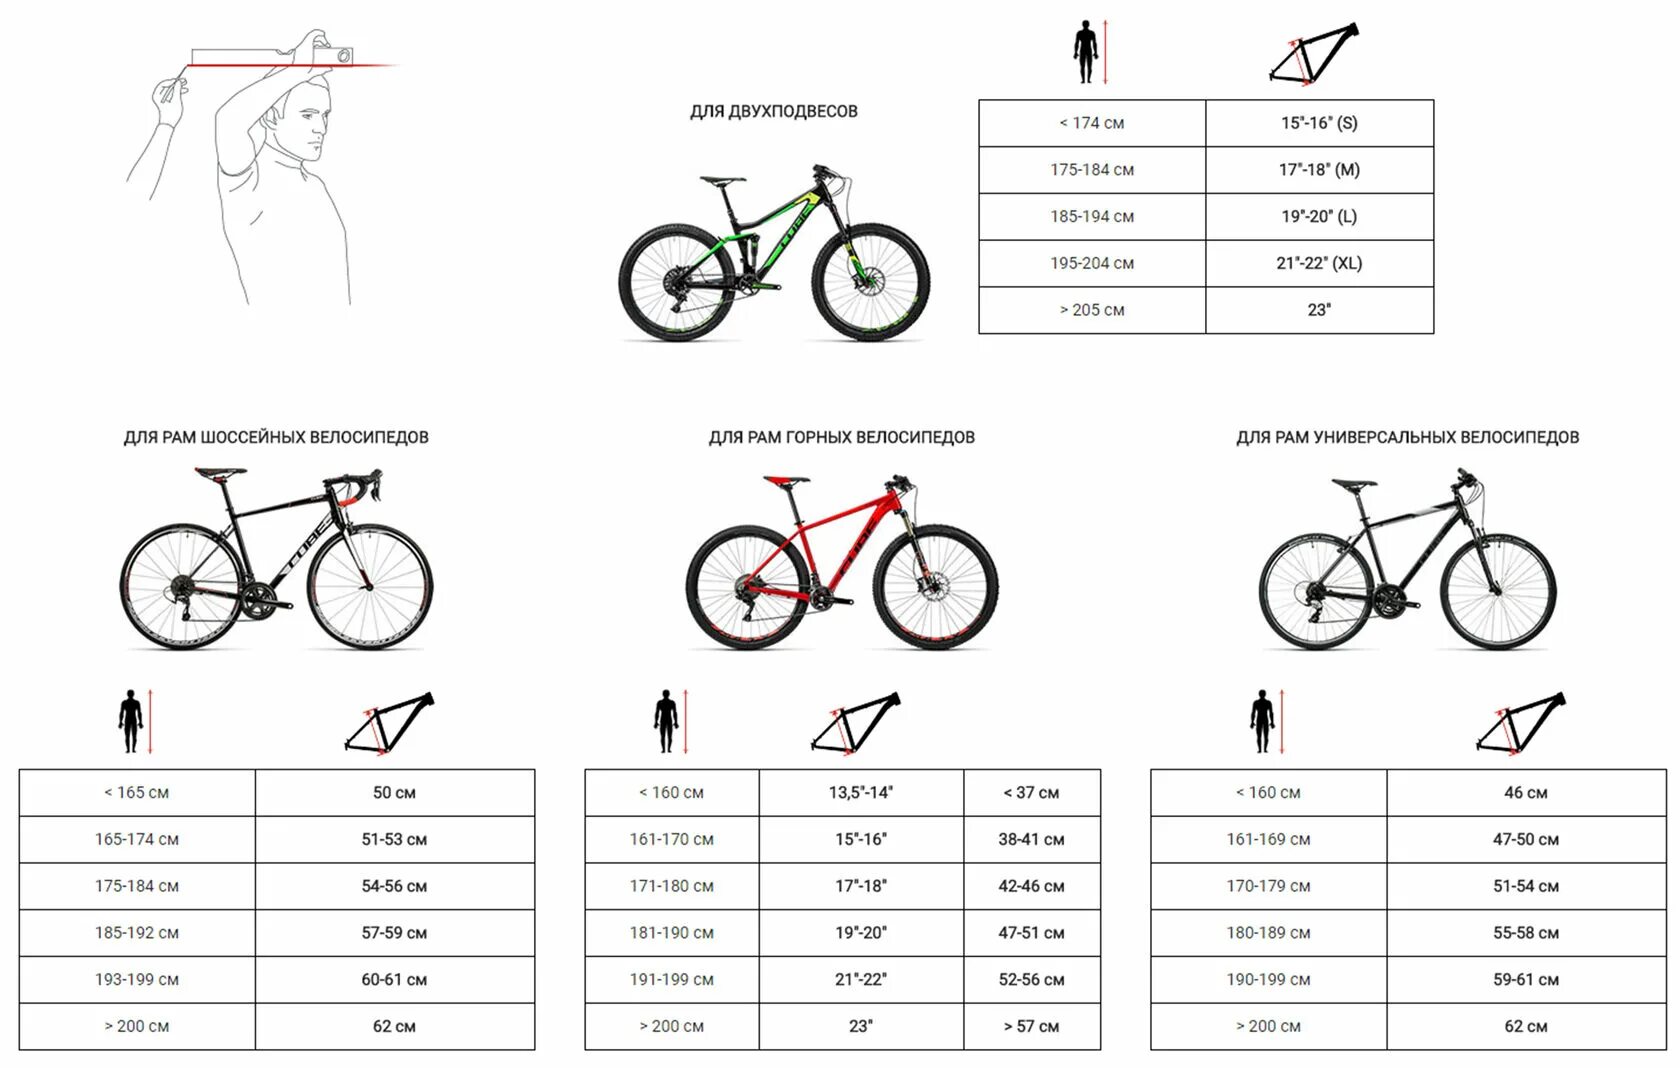 Колеса 24 дюйма на какой рост. Велосипед stels размер рамы и рост. Как выбрать размер горного велосипеда по росту таблица. Как выбрать параметры велосипеда по росту и весу таблица. Рост и рама велосипеда таблица.